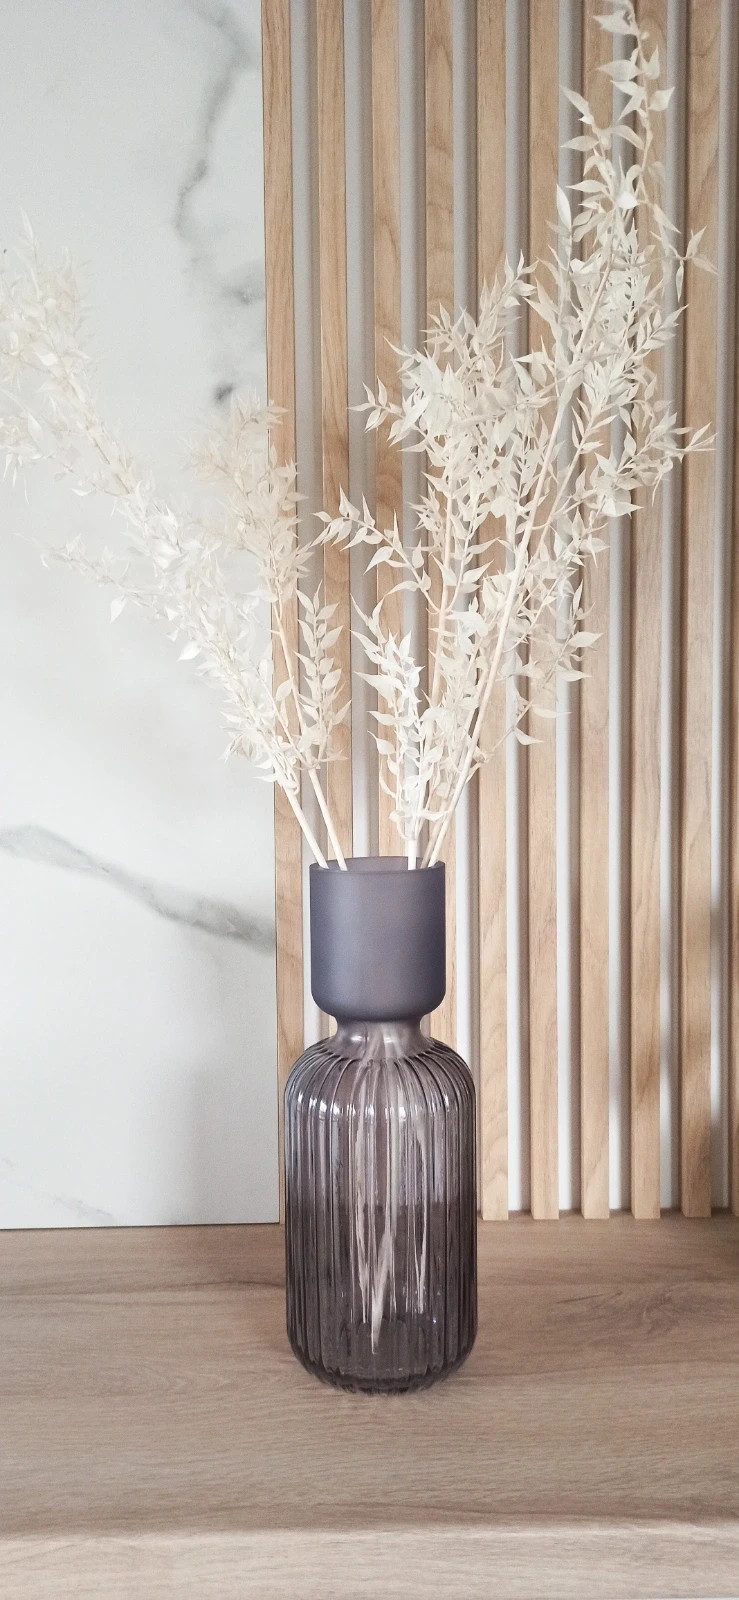 NOWY piękny fioletowy szklany wazon Matowe i karbowane szkło 🍇